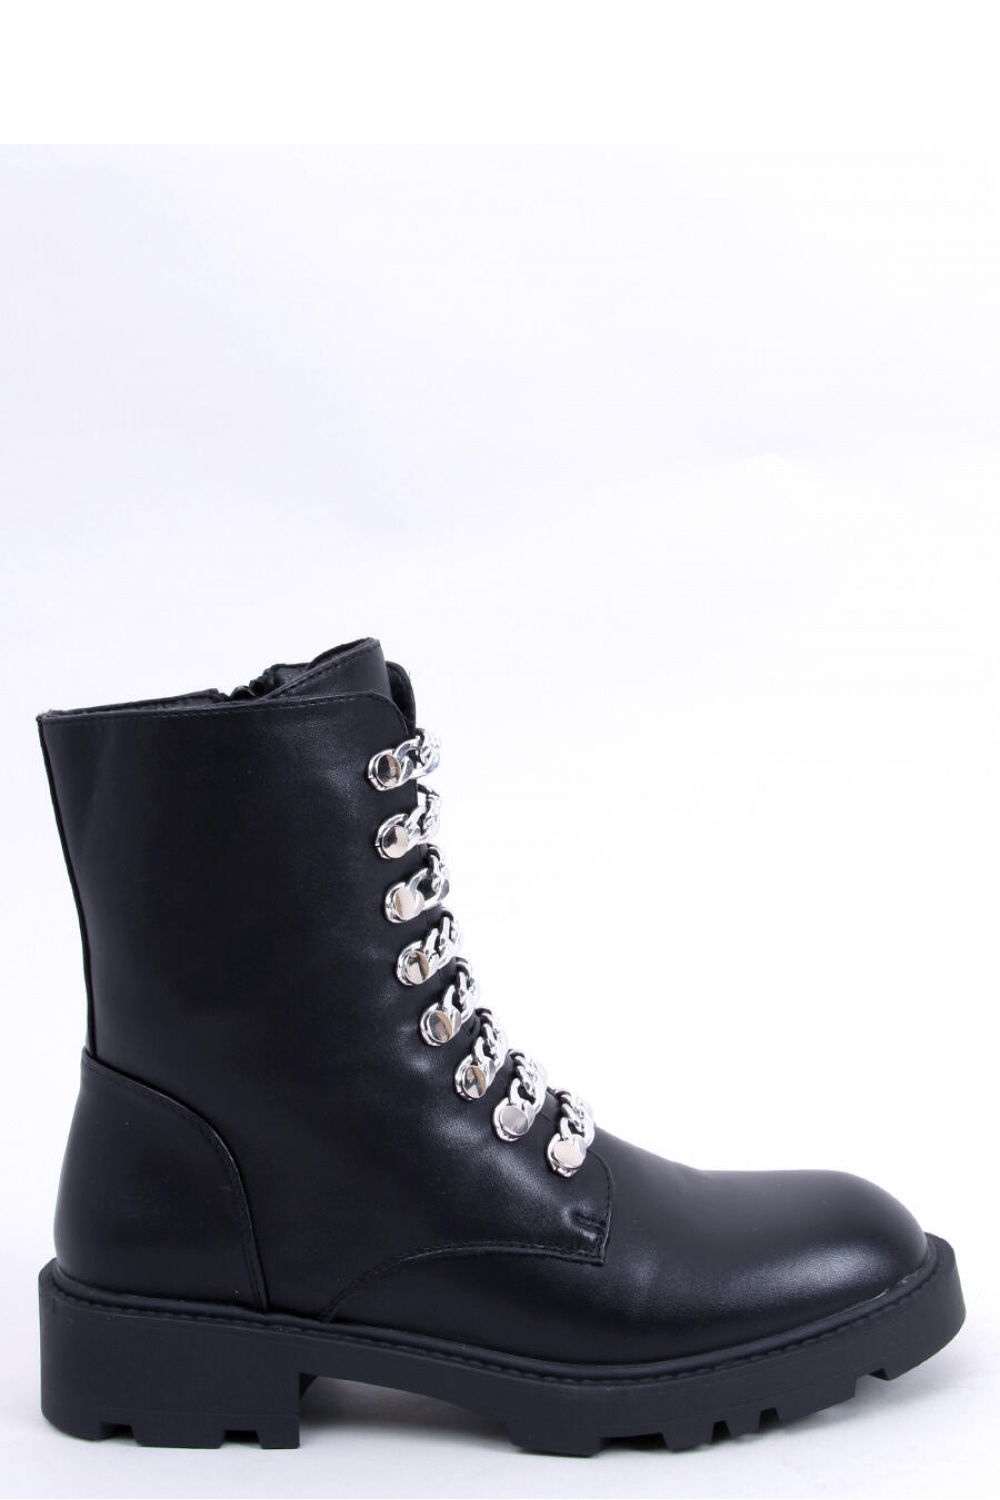  Boots model 174087 Inello  black